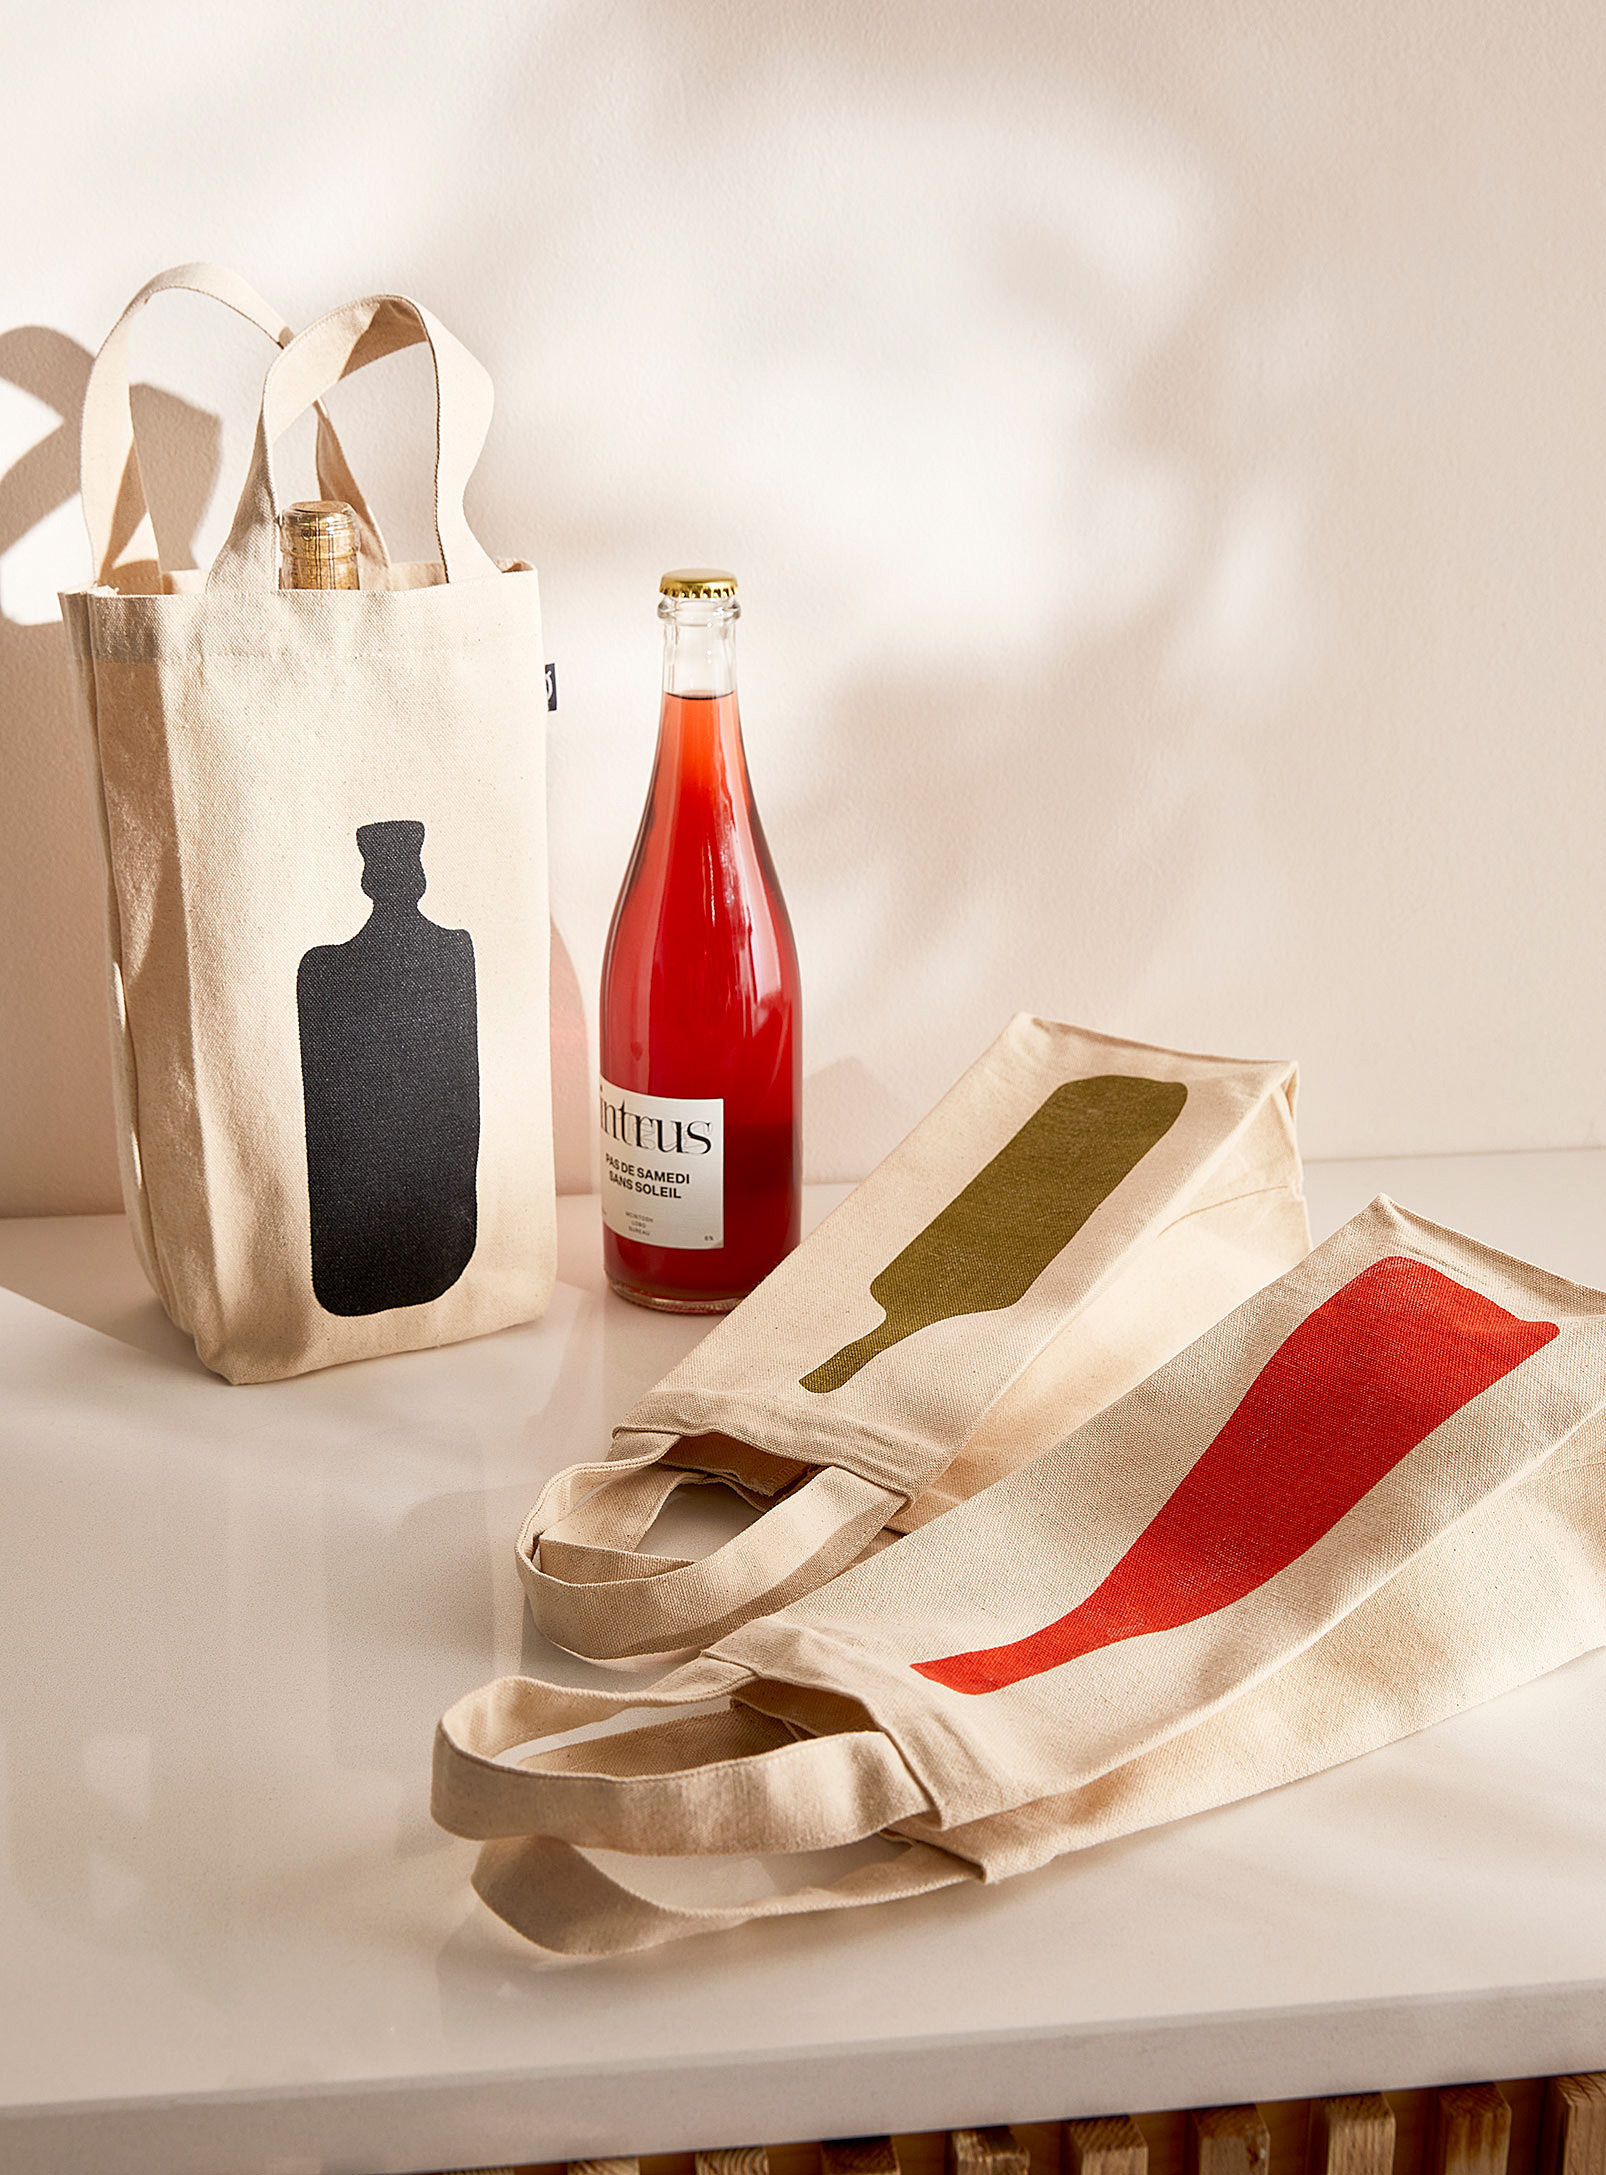 Les sacs réutilisables coton recyclé Des bonbons ou un sort Ensemble de 2, Simons Maison, Ustensiles de cuisine et contenants